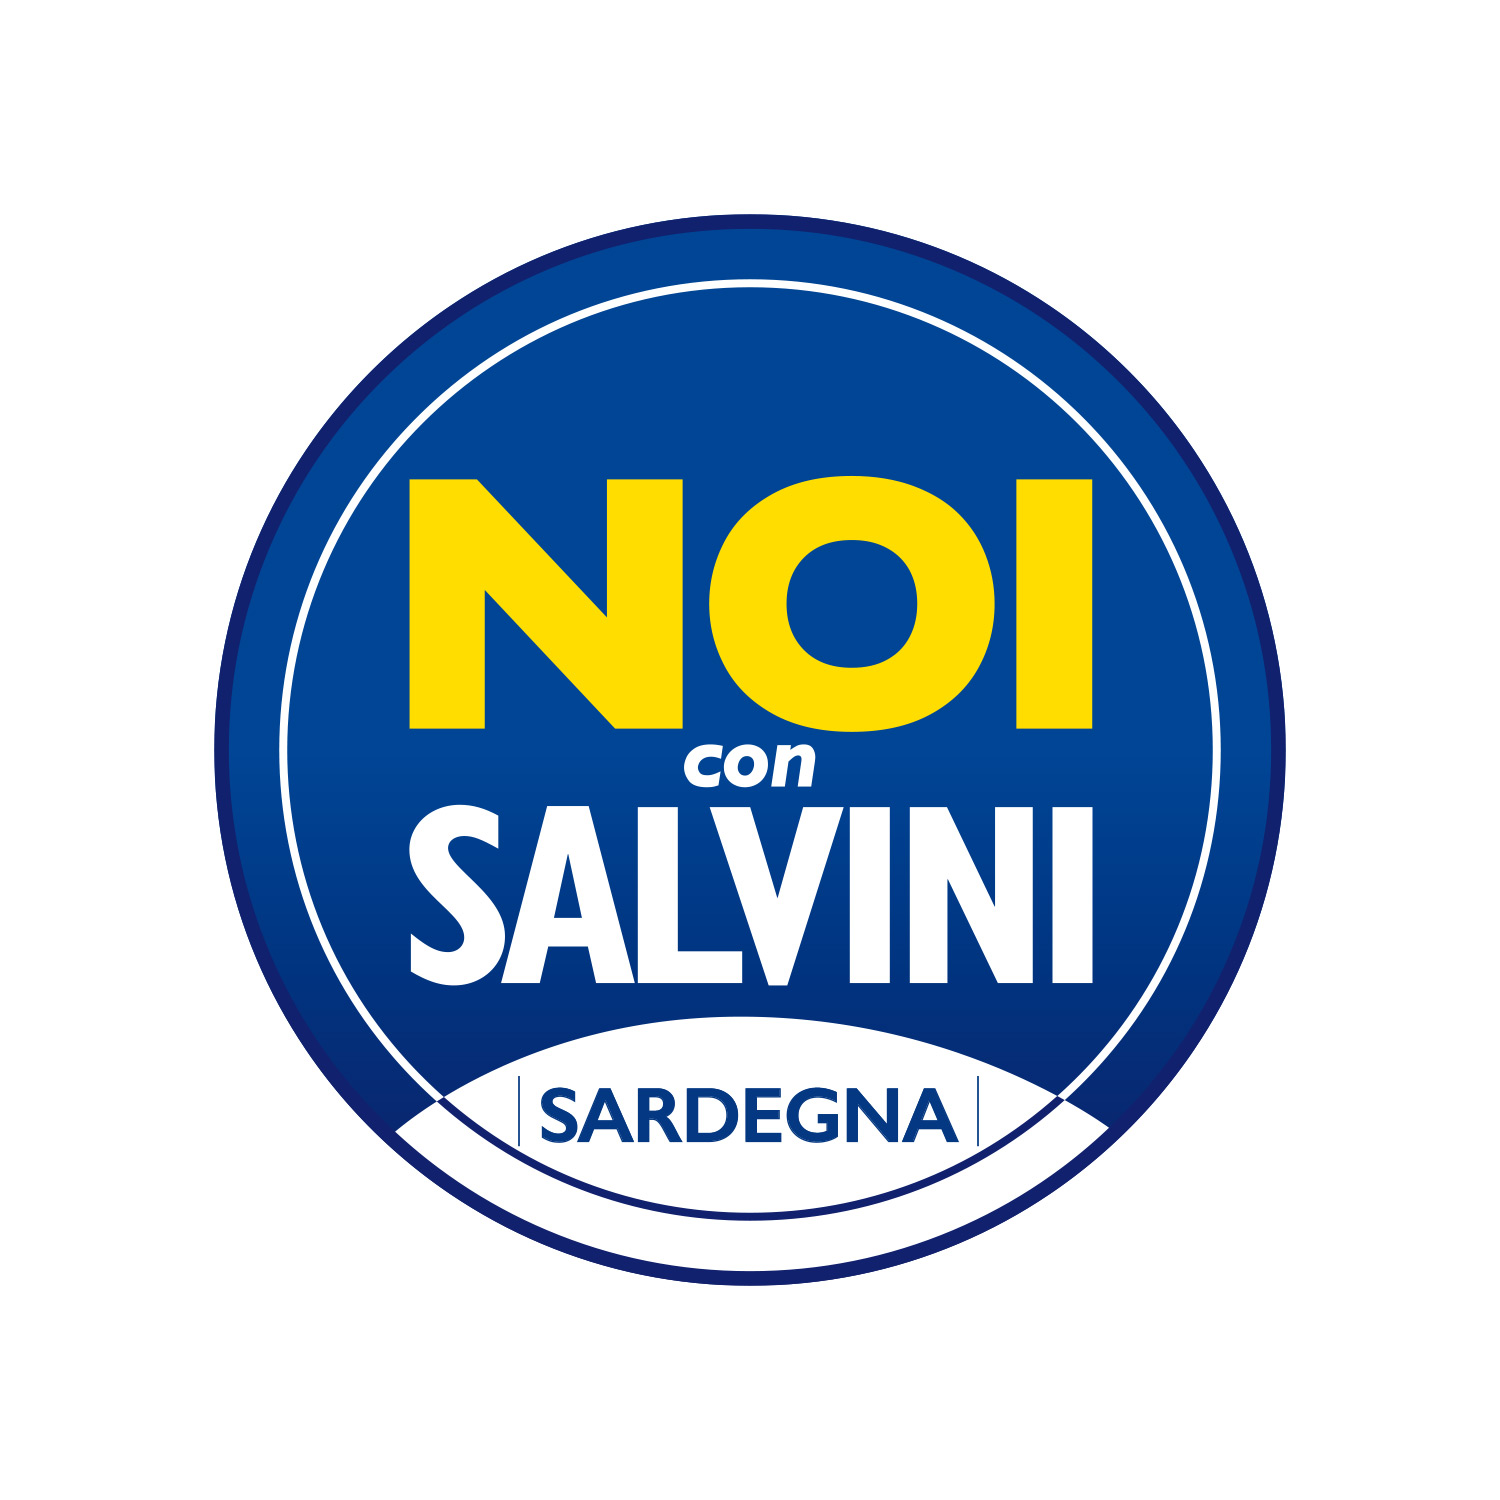 Noi con Salvini – Sardegna: Piano regionale per l’accoglienza è piano per sostituzione etnica e causerà forti tensioni sociali 